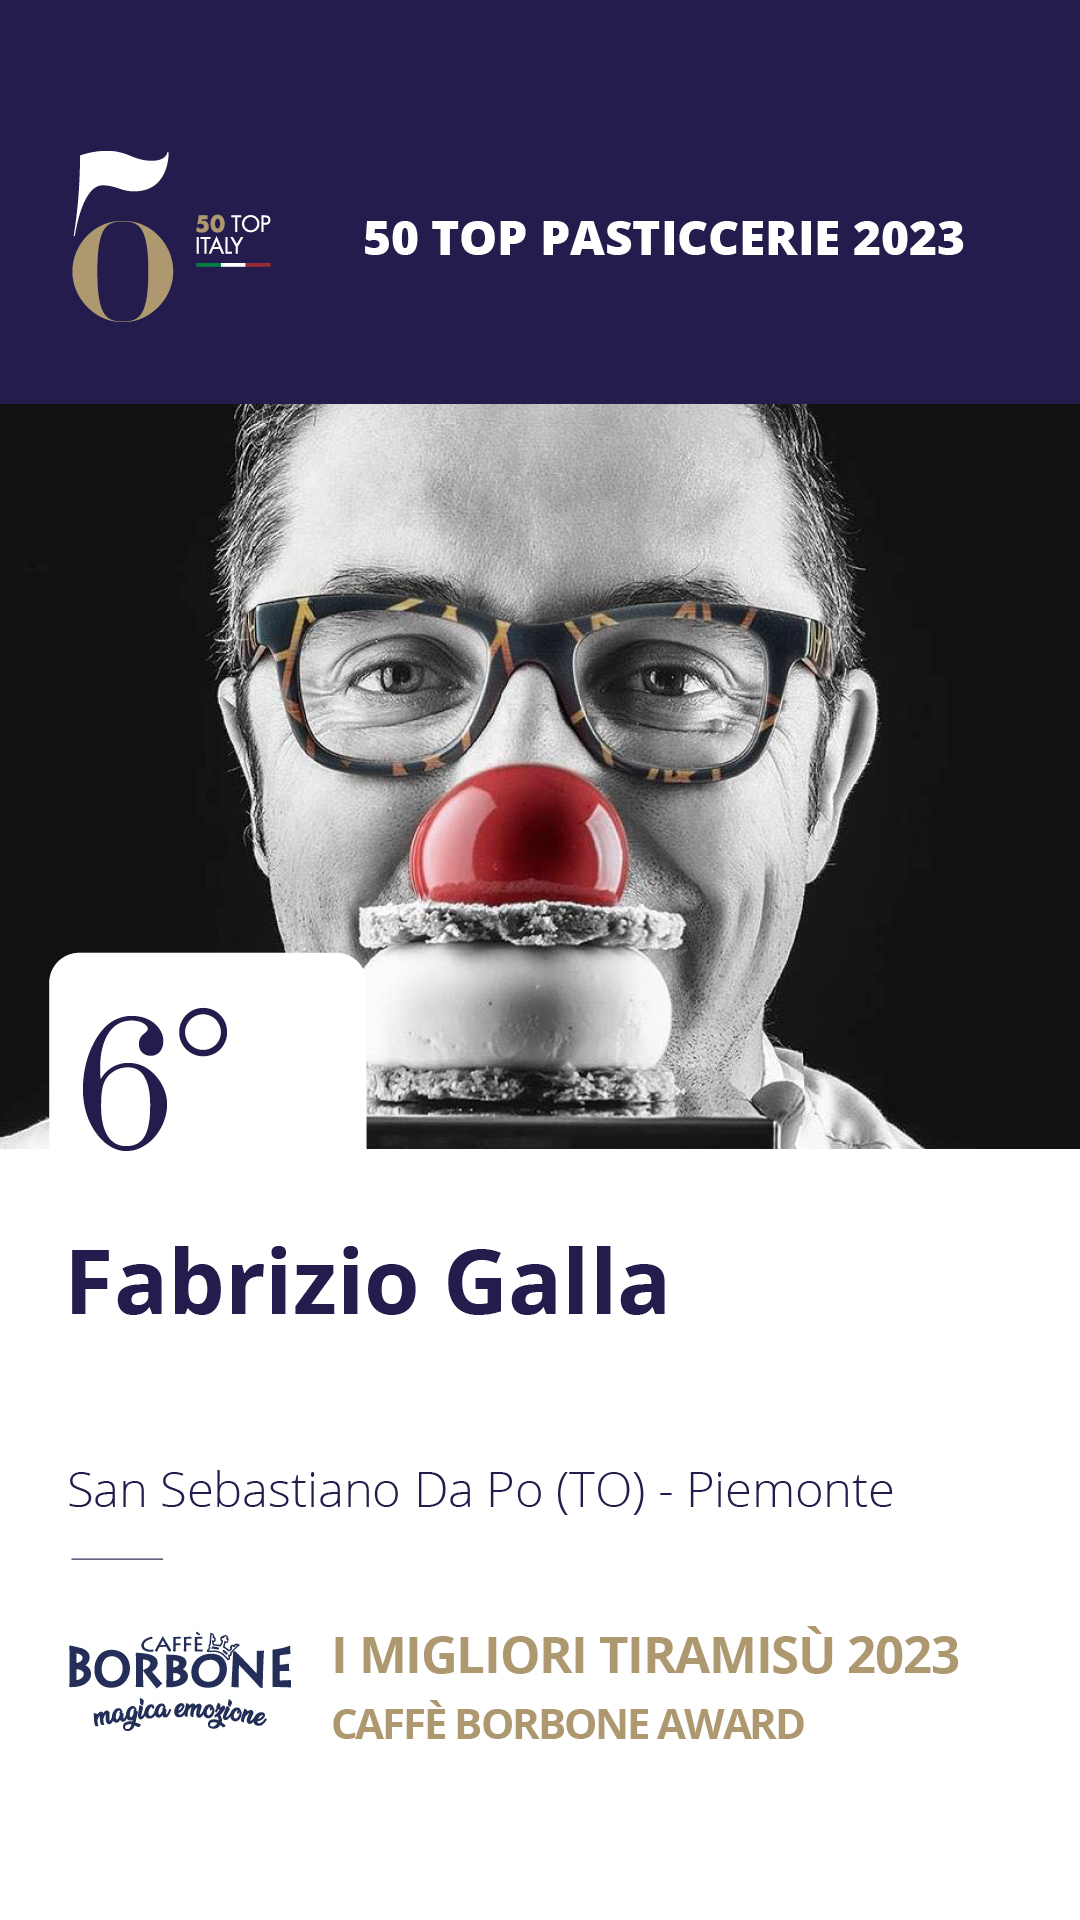 6. Fabrizio Galla - San Sebastiano Da Po (TO), Piemonte